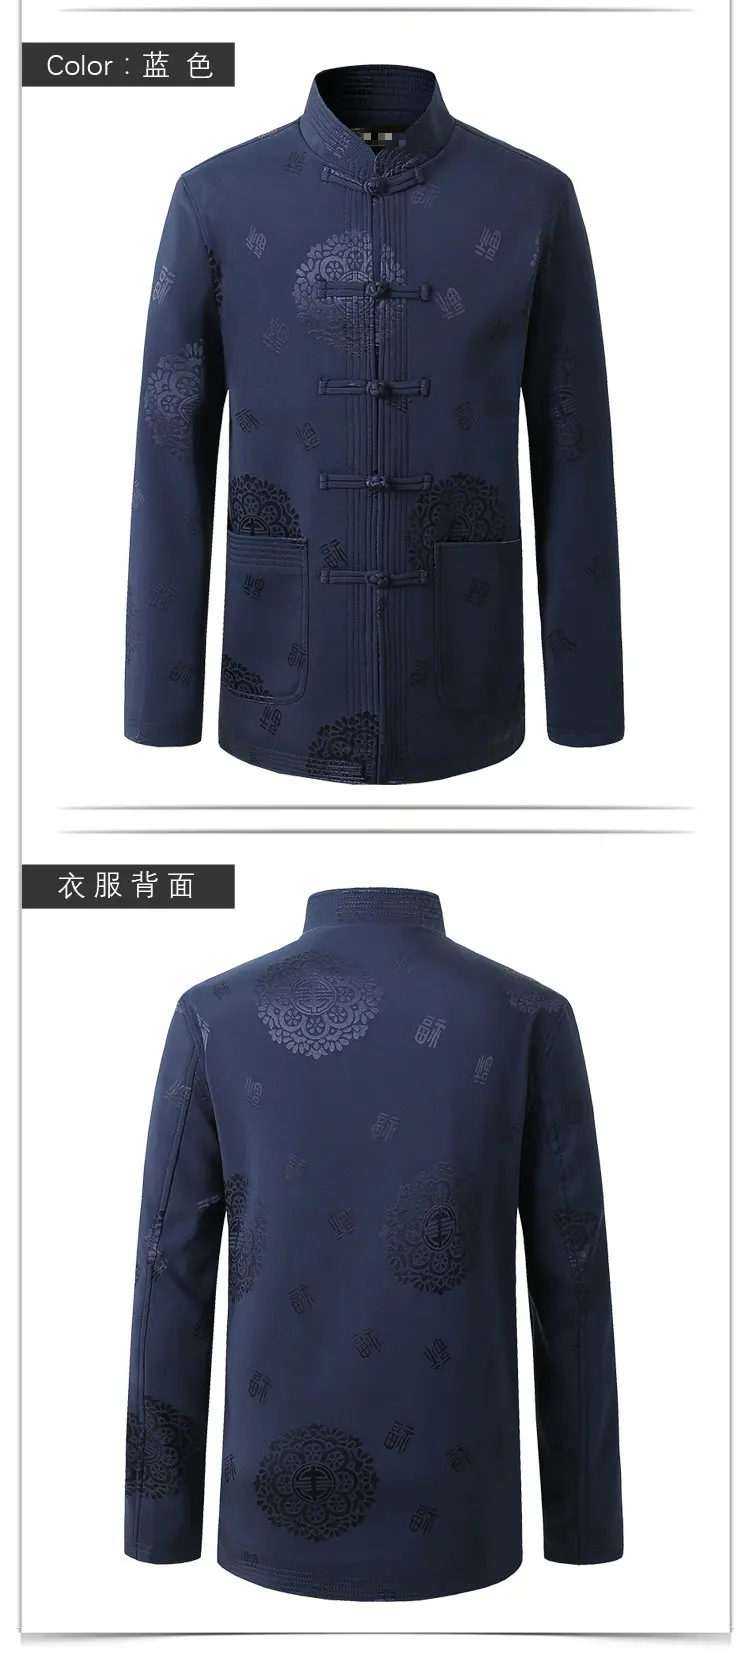 Китайский стиль, мужская куртка с воротником "Мандарин", мужское этническое пальто бренда Tangzhuang, традиционный Мао костюм Kong Fu, куртки красного и синего цвета